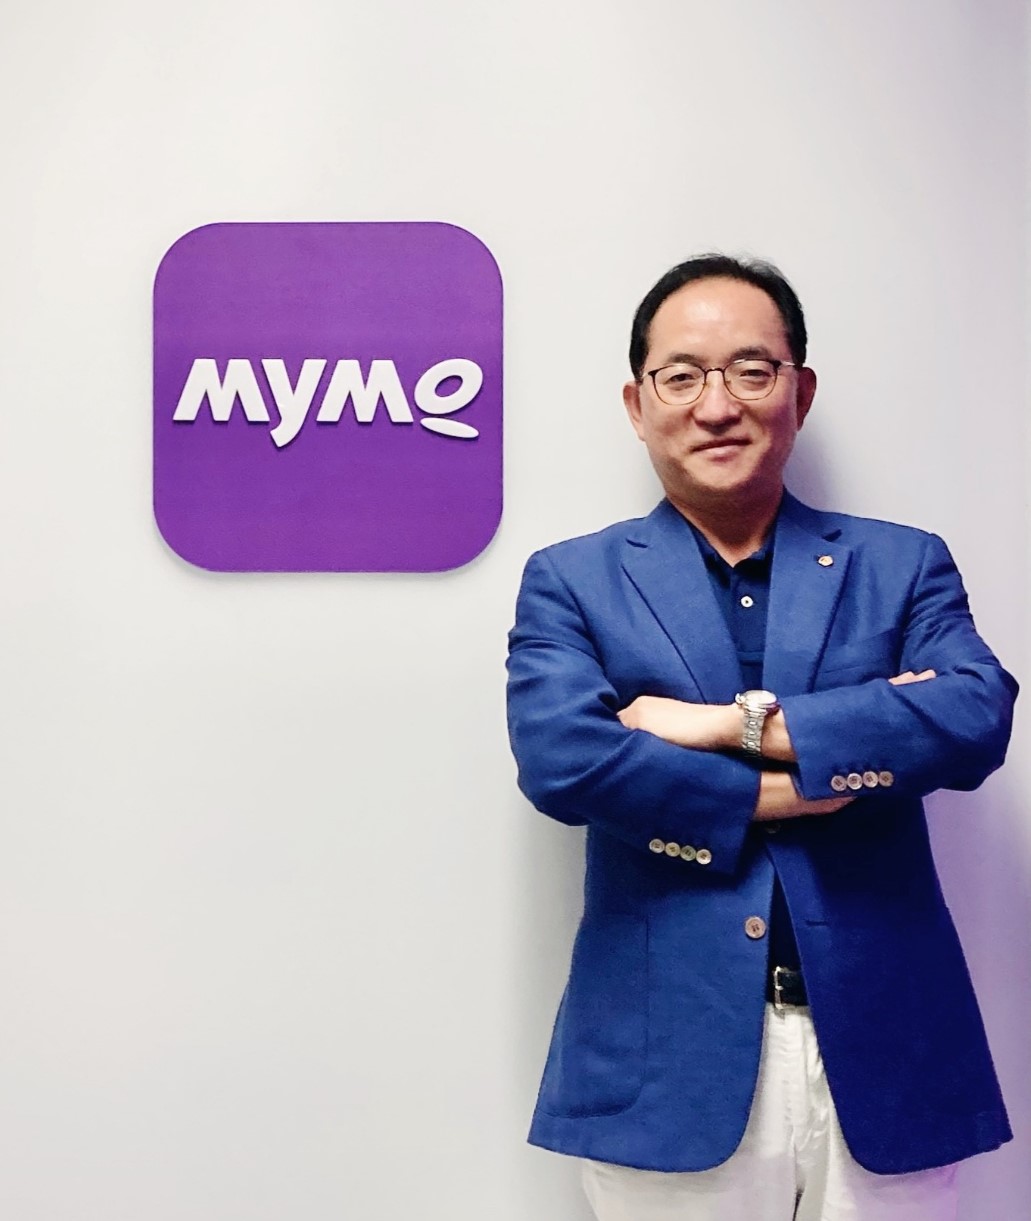  홍정표 한화저축은행 대표이사가 ‘Mymo(마이모)’ 앱 로고 앞에서 포즈를 취하고 있다.(사진=한화저축은행)